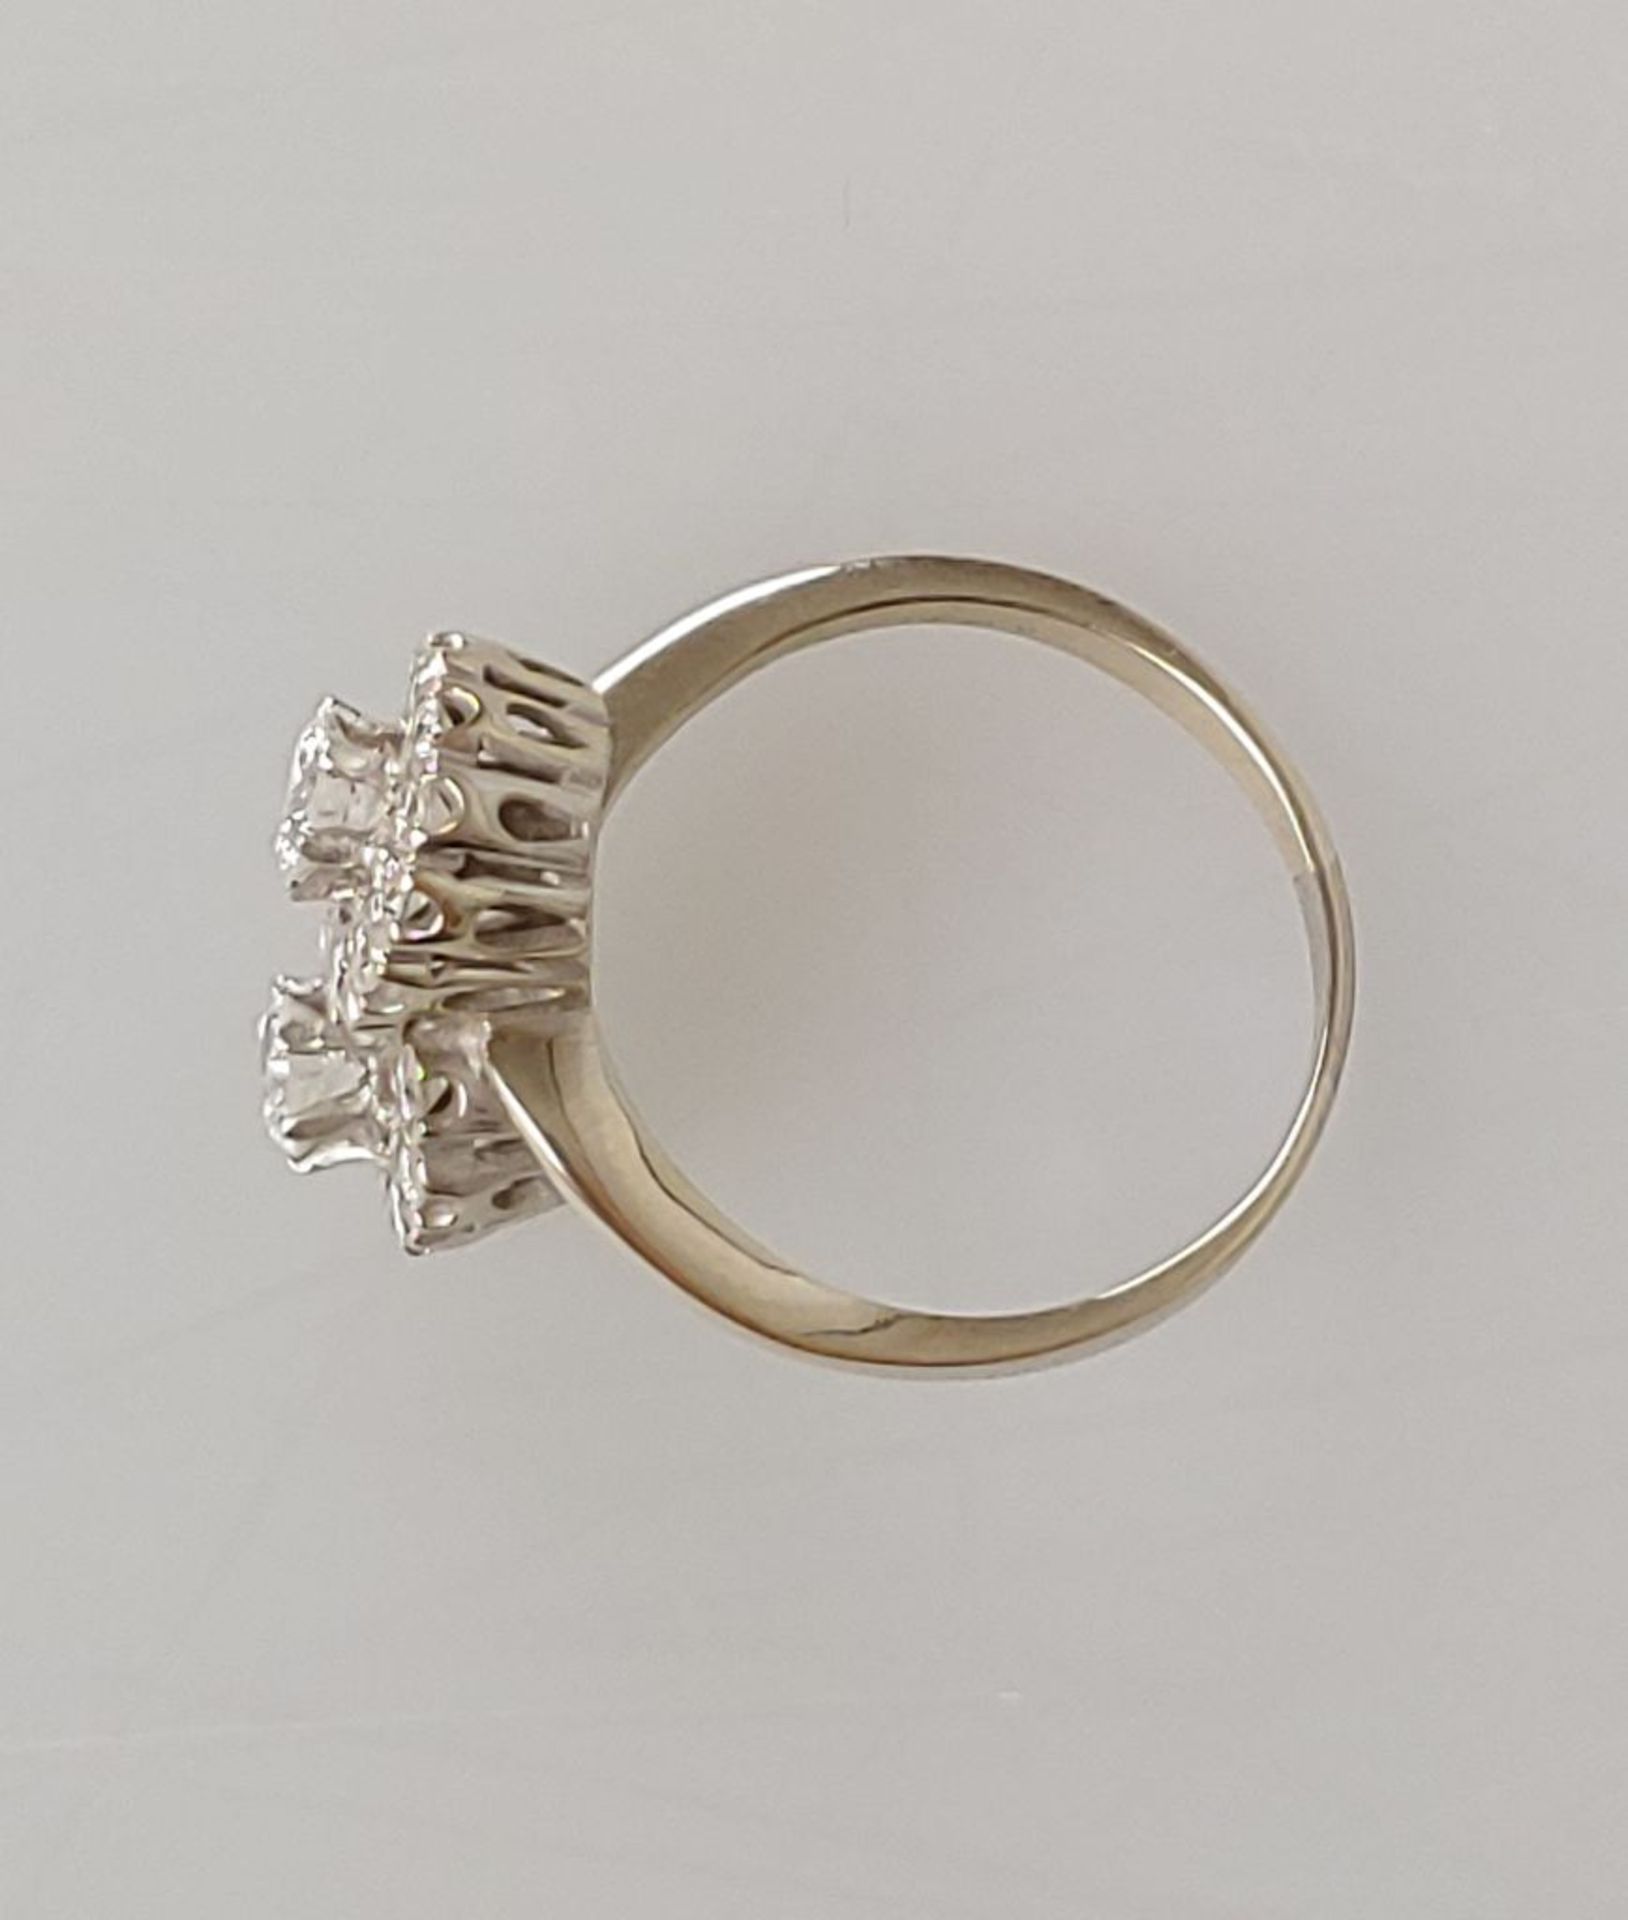 Brilliantring, 585er Weißgold, gestempelt. Ringkopf mit 2 aufgesetzte Diamanten von je ca. 0,30 ct - Bild 3 aus 3